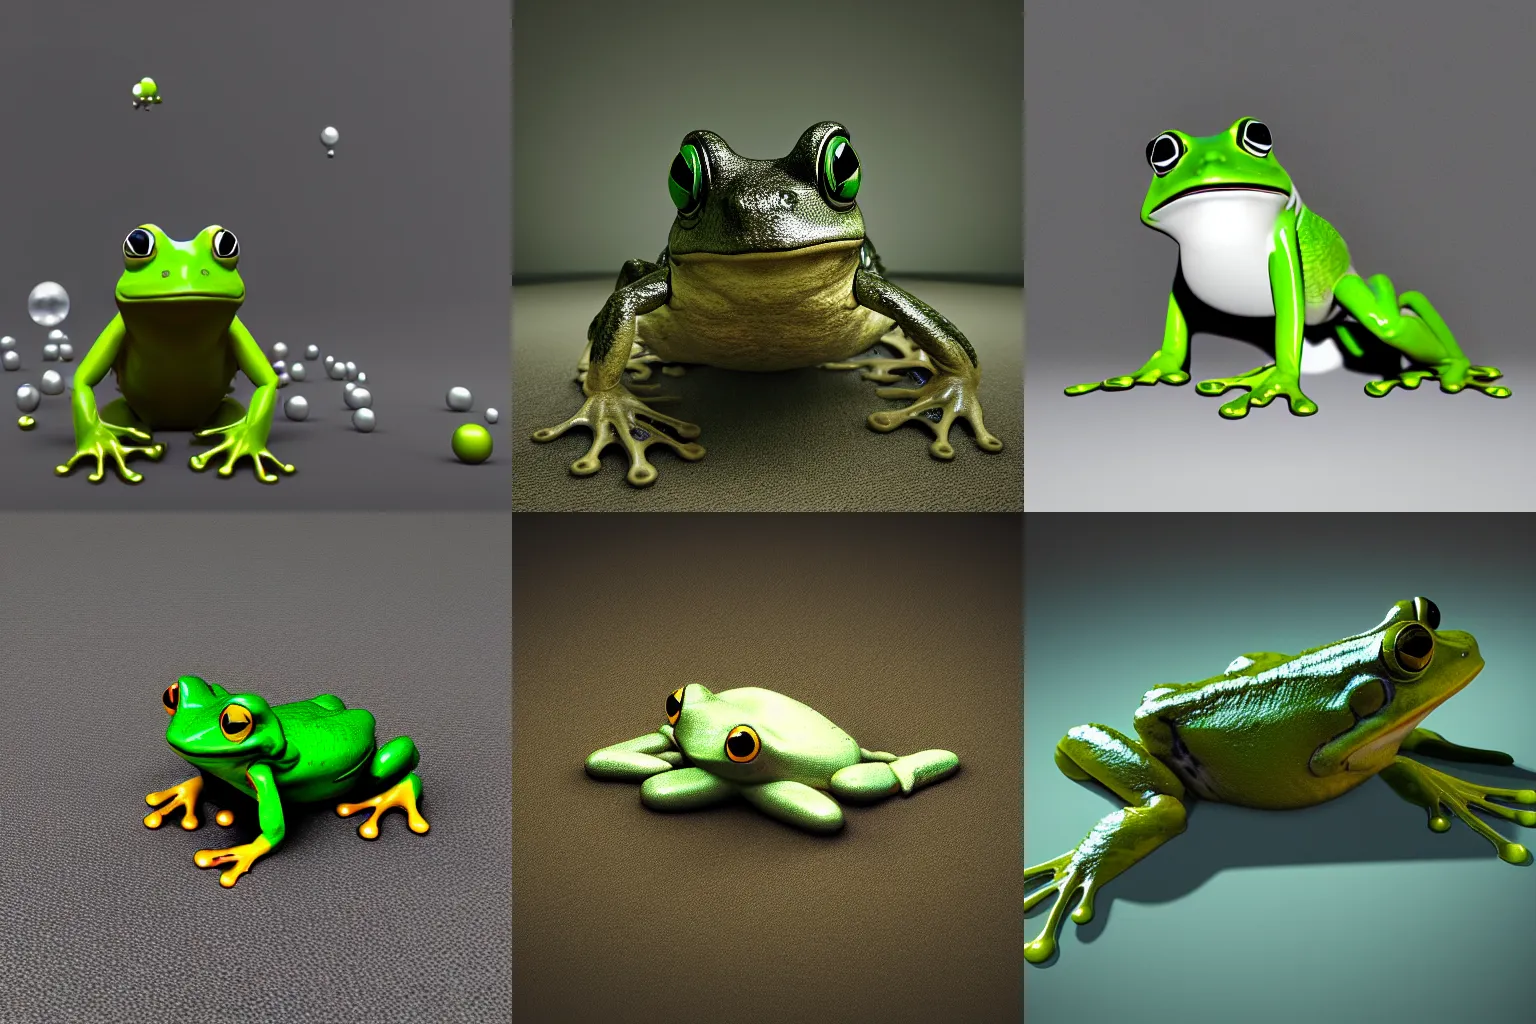 Frog #133 - ArtOnFrog NFT